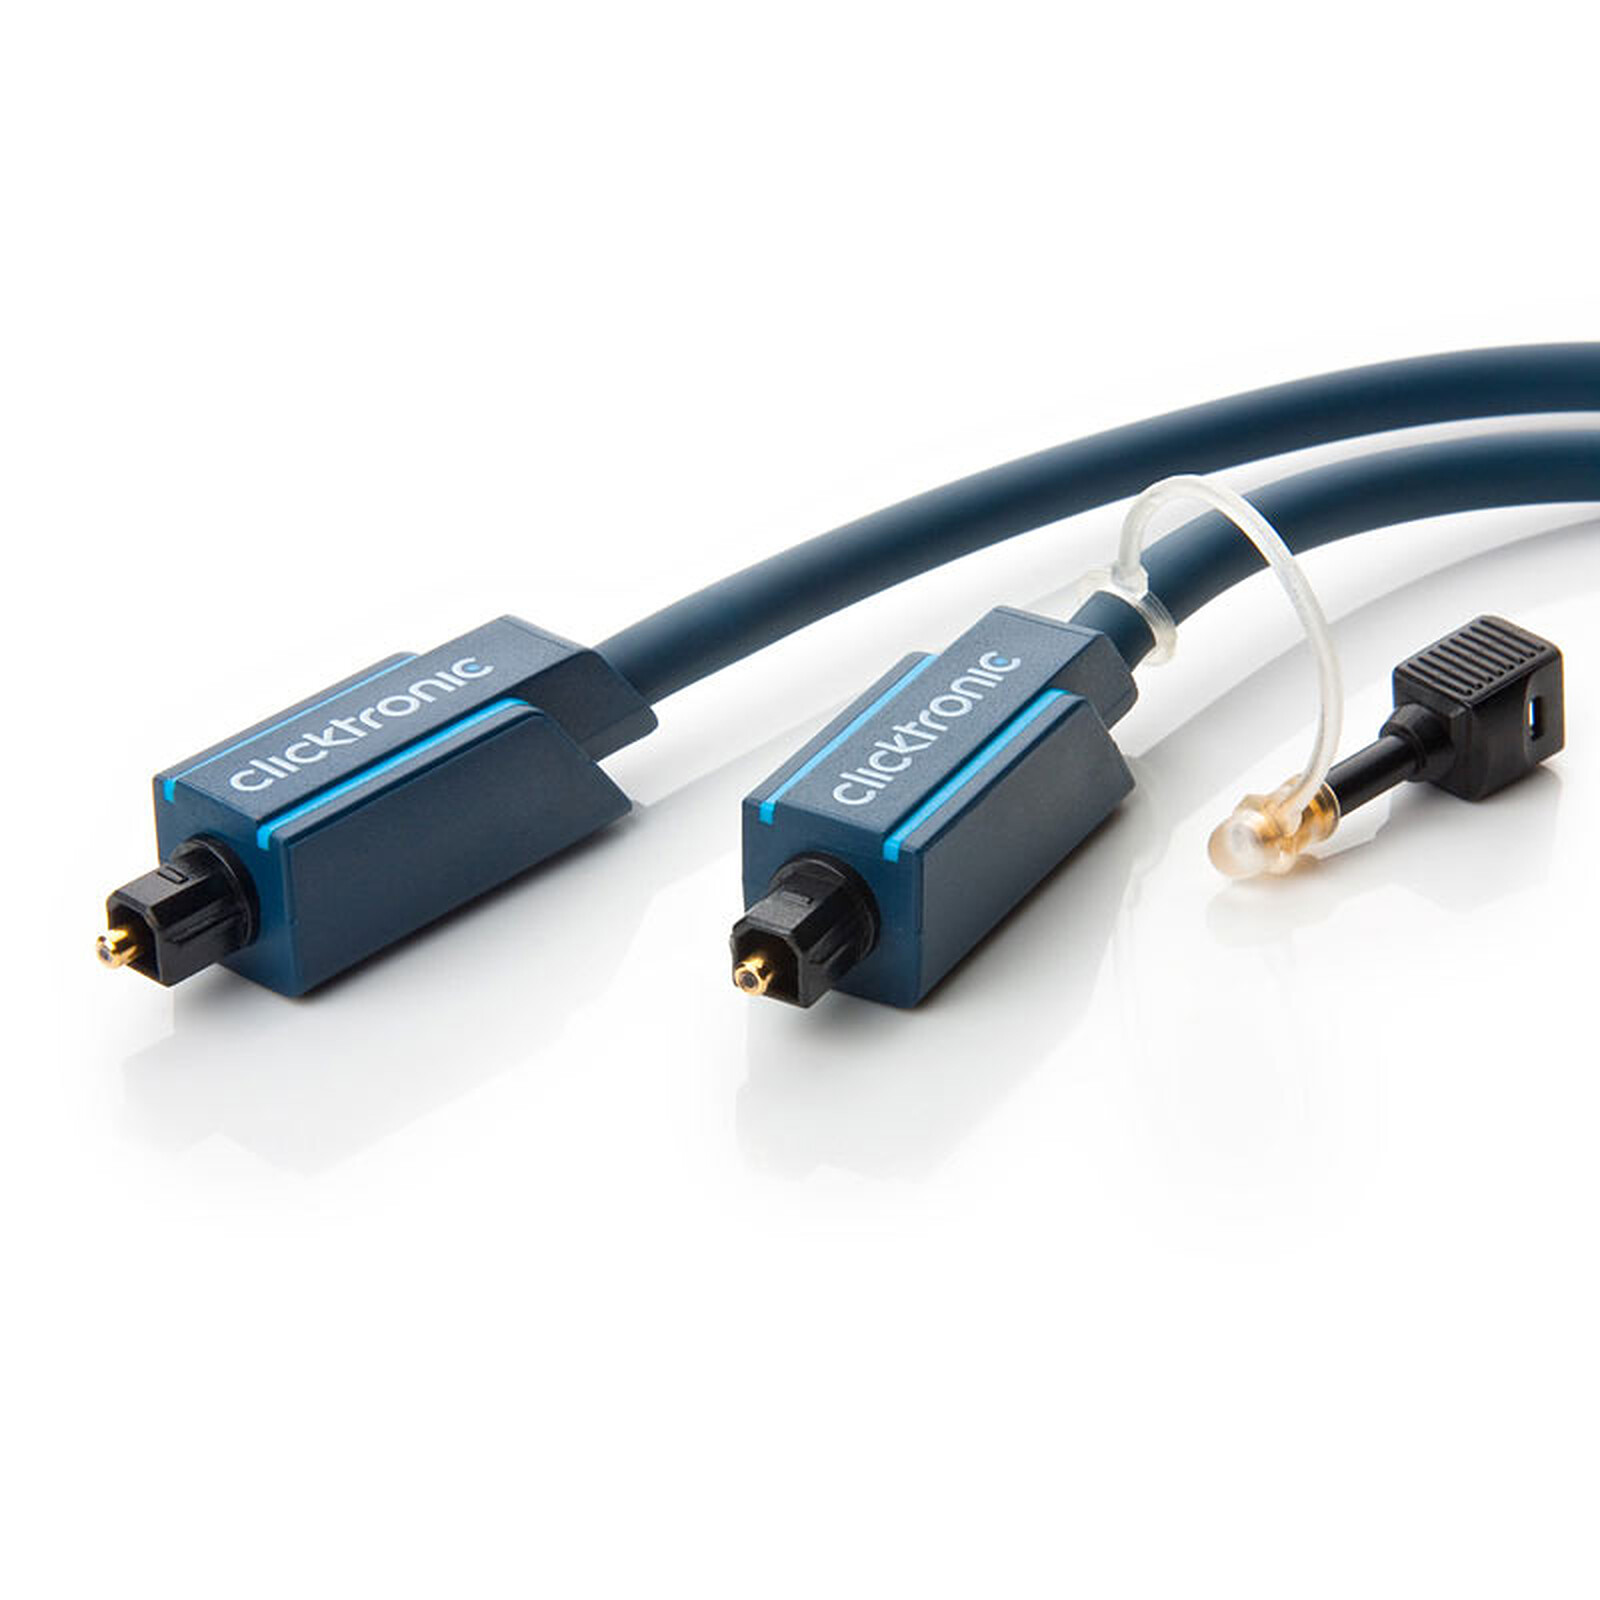 Real Cable OPT-1 1.5m - Câble audio numérique - Garantie 3 ans LDLC